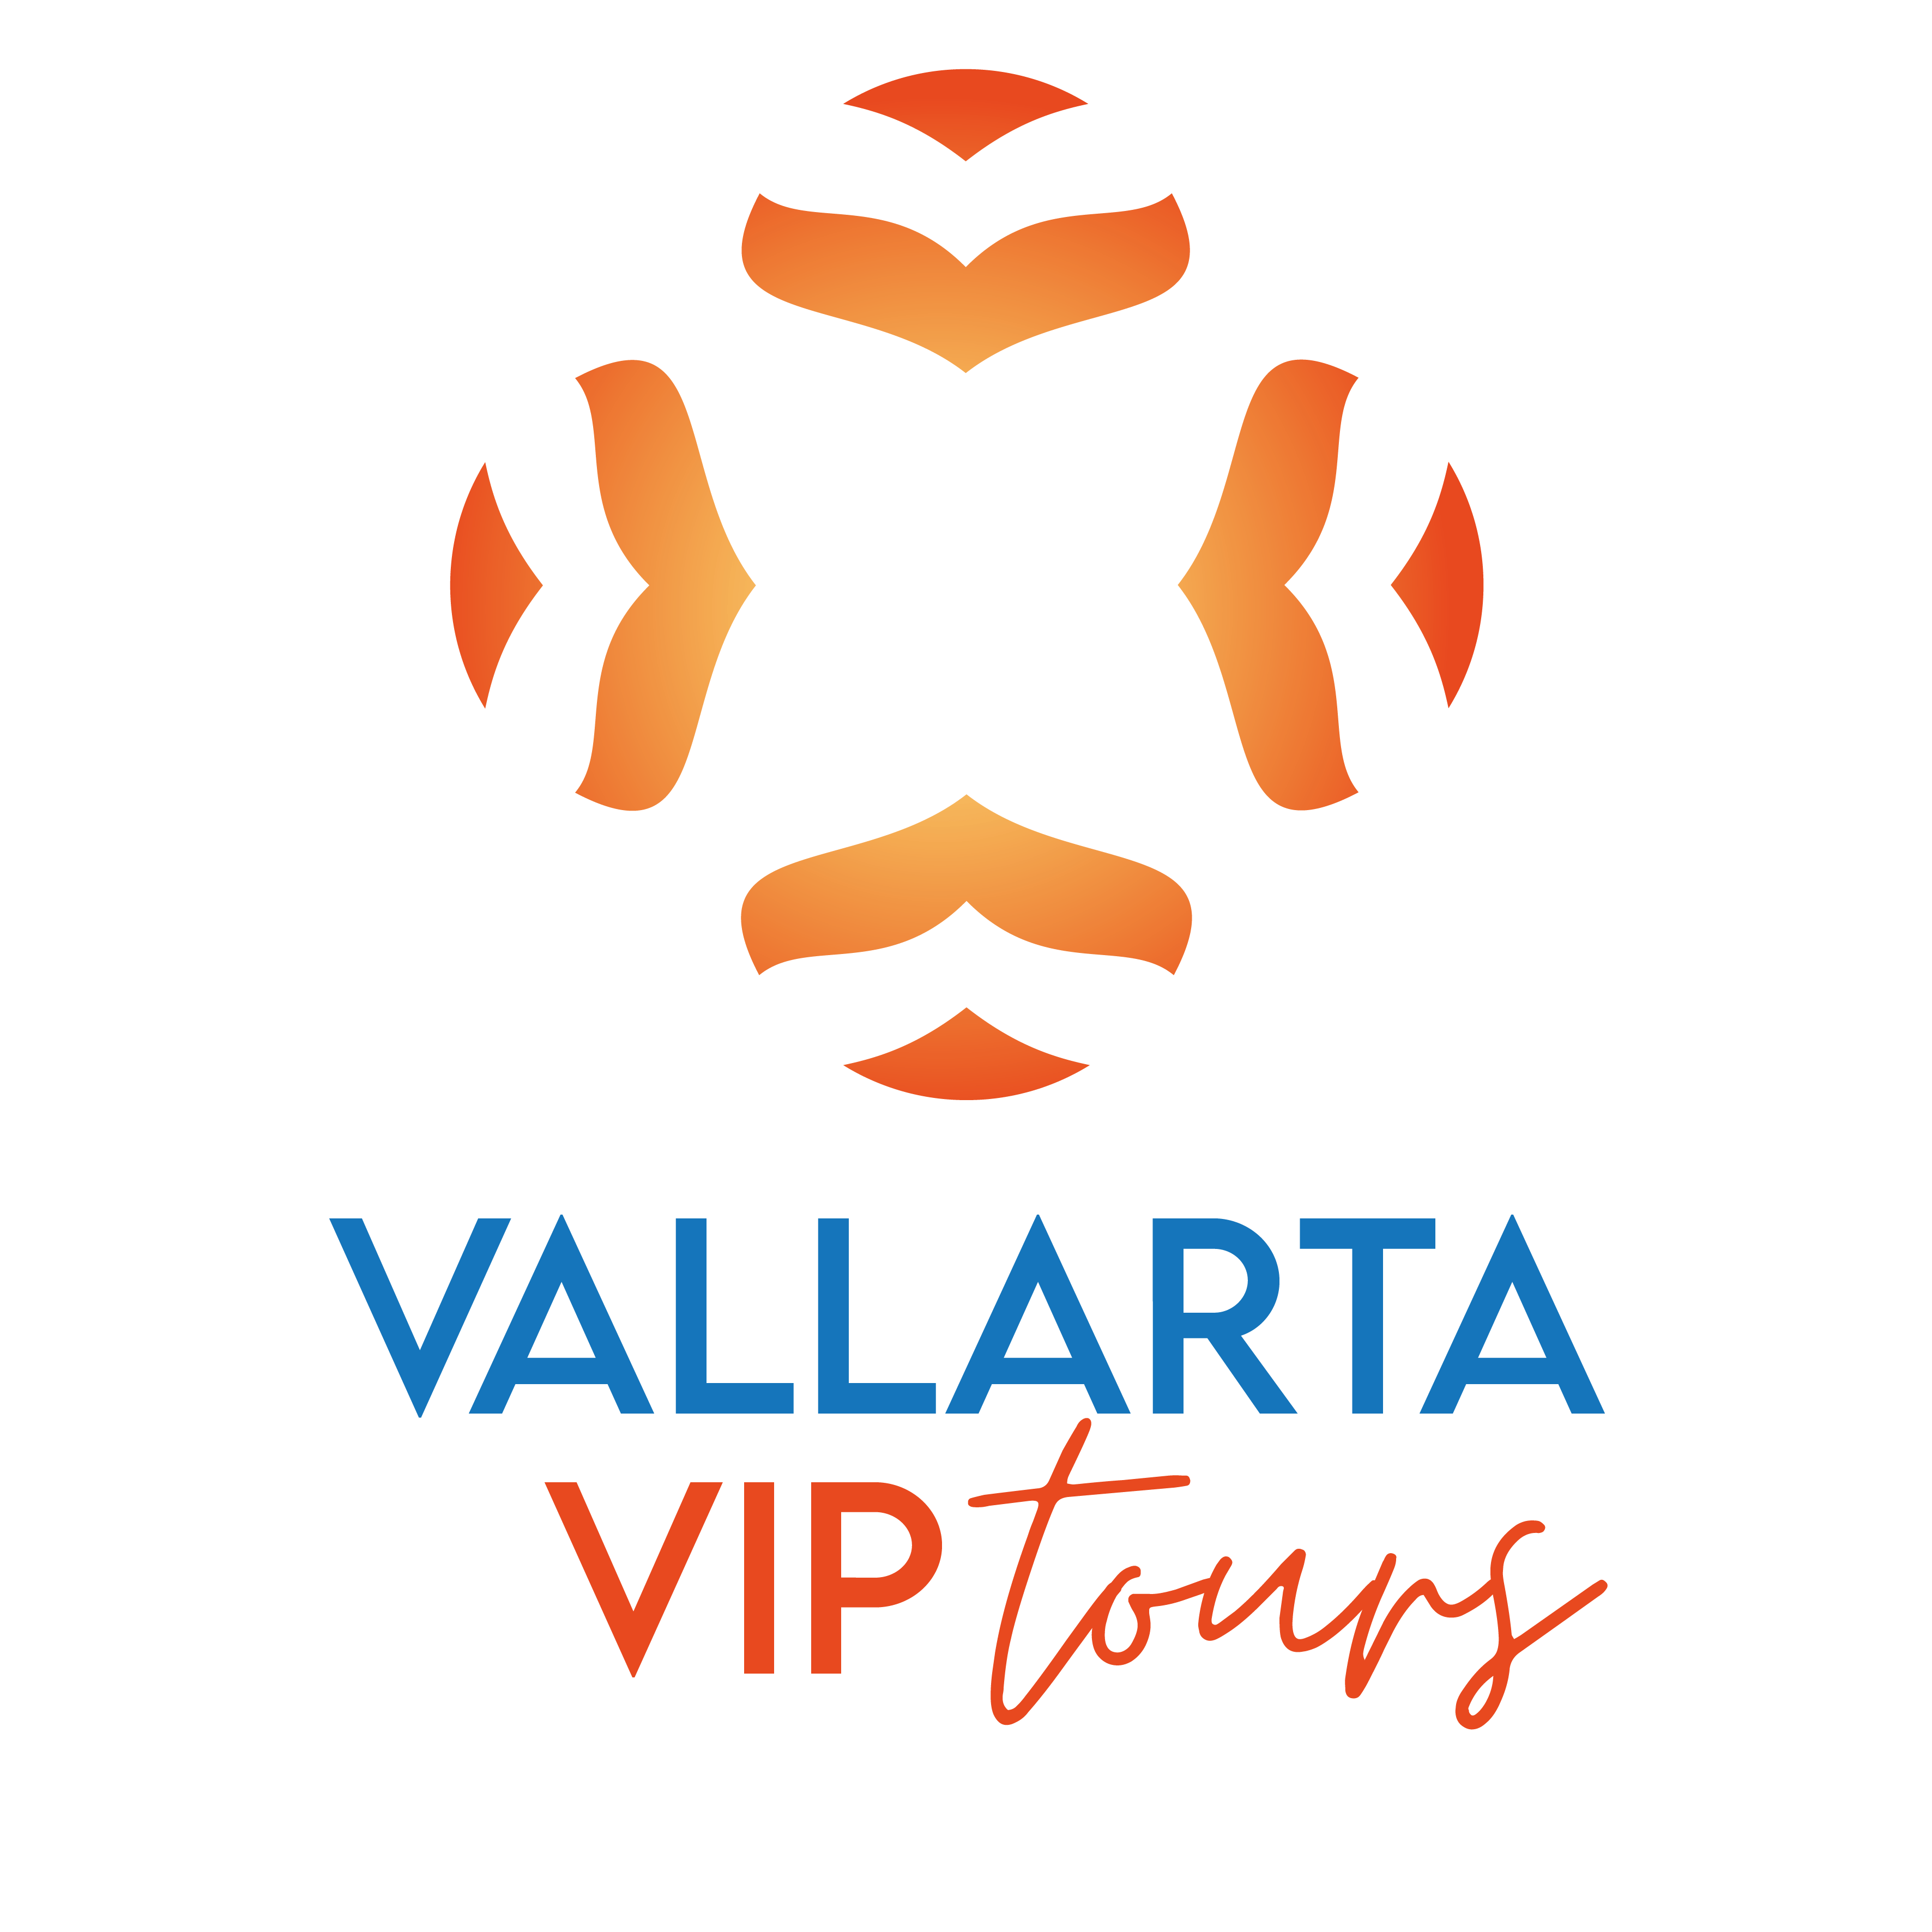 Vallarta Vip Tours